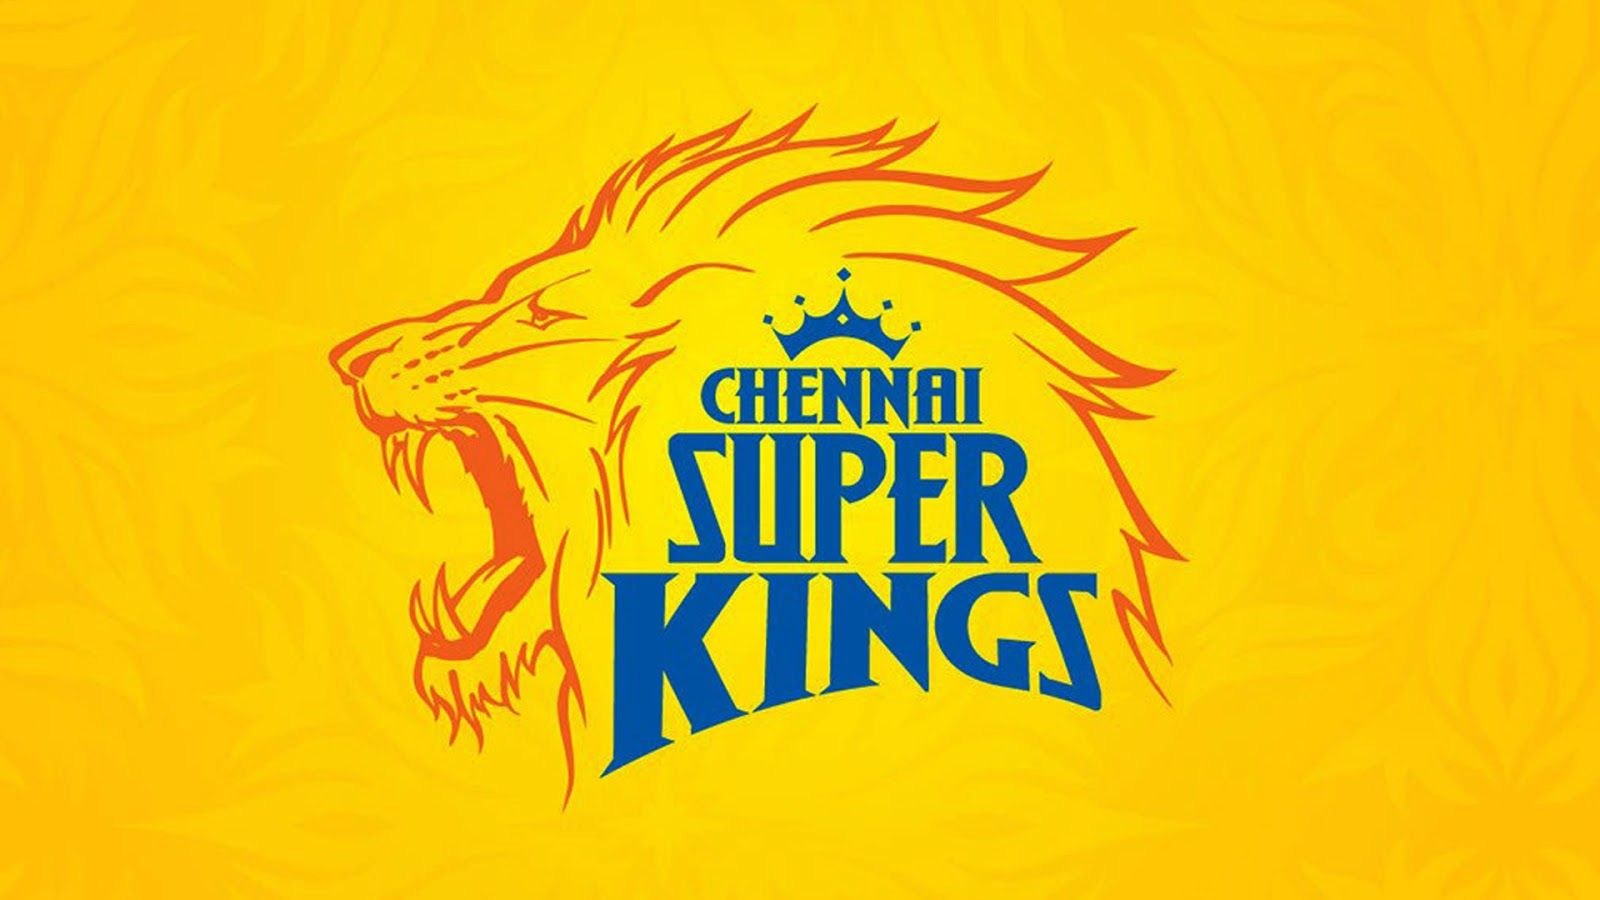 Chennai Super Kings HD Wallpaper 1080p Csk